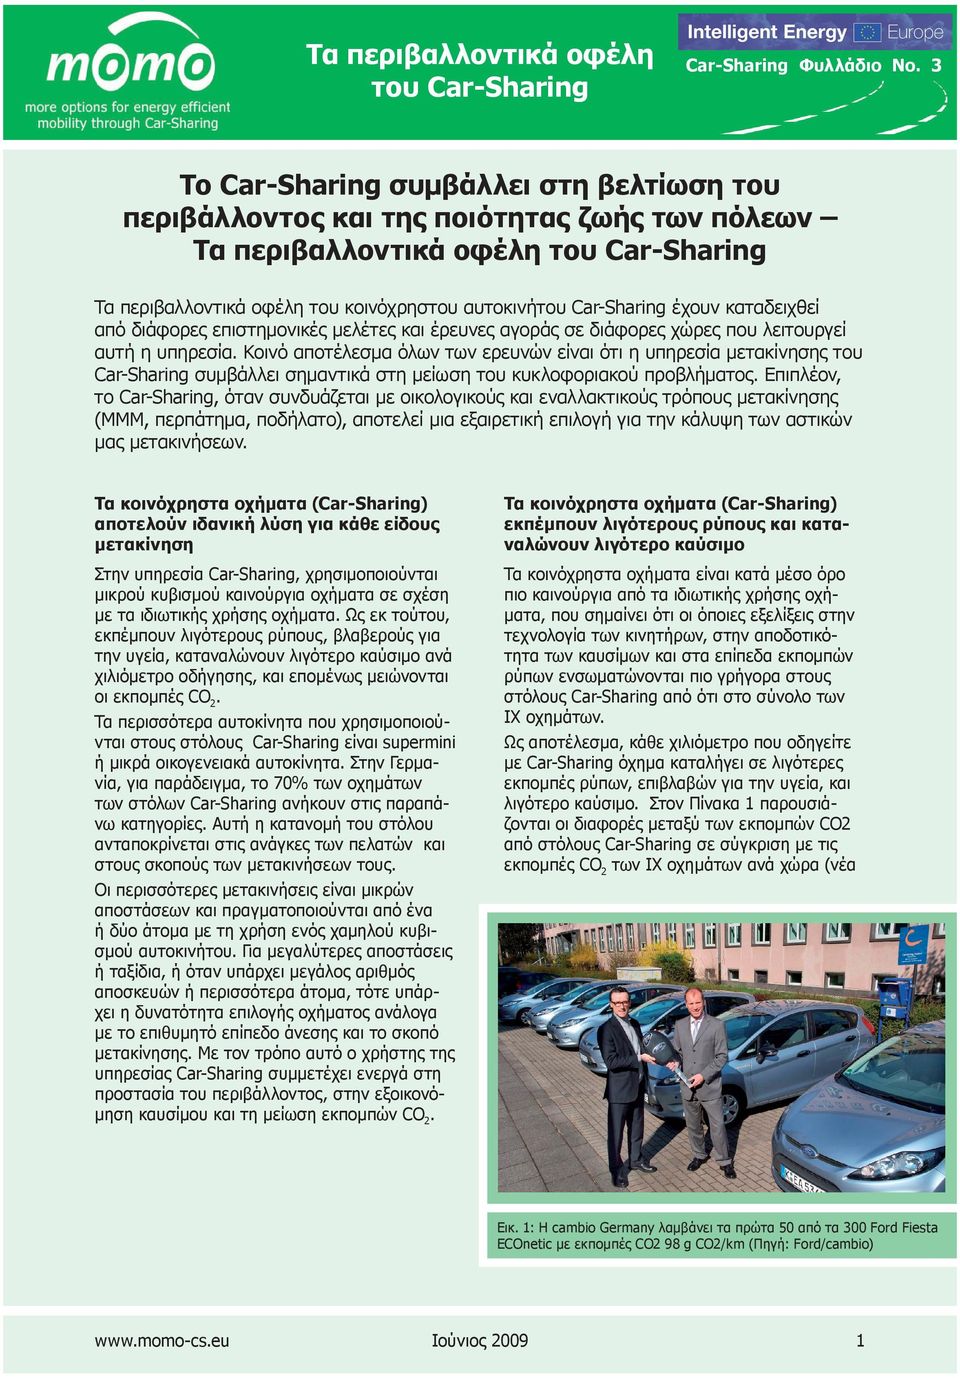 Κοινό αποτέλεσμα όλων των ερευνών είναι ότι η υπηρεσία μετακίνησης του Car-Sharing συμβάλλει σημαντικά στη μείωση του κυκλοφοριακού προβλήματος.